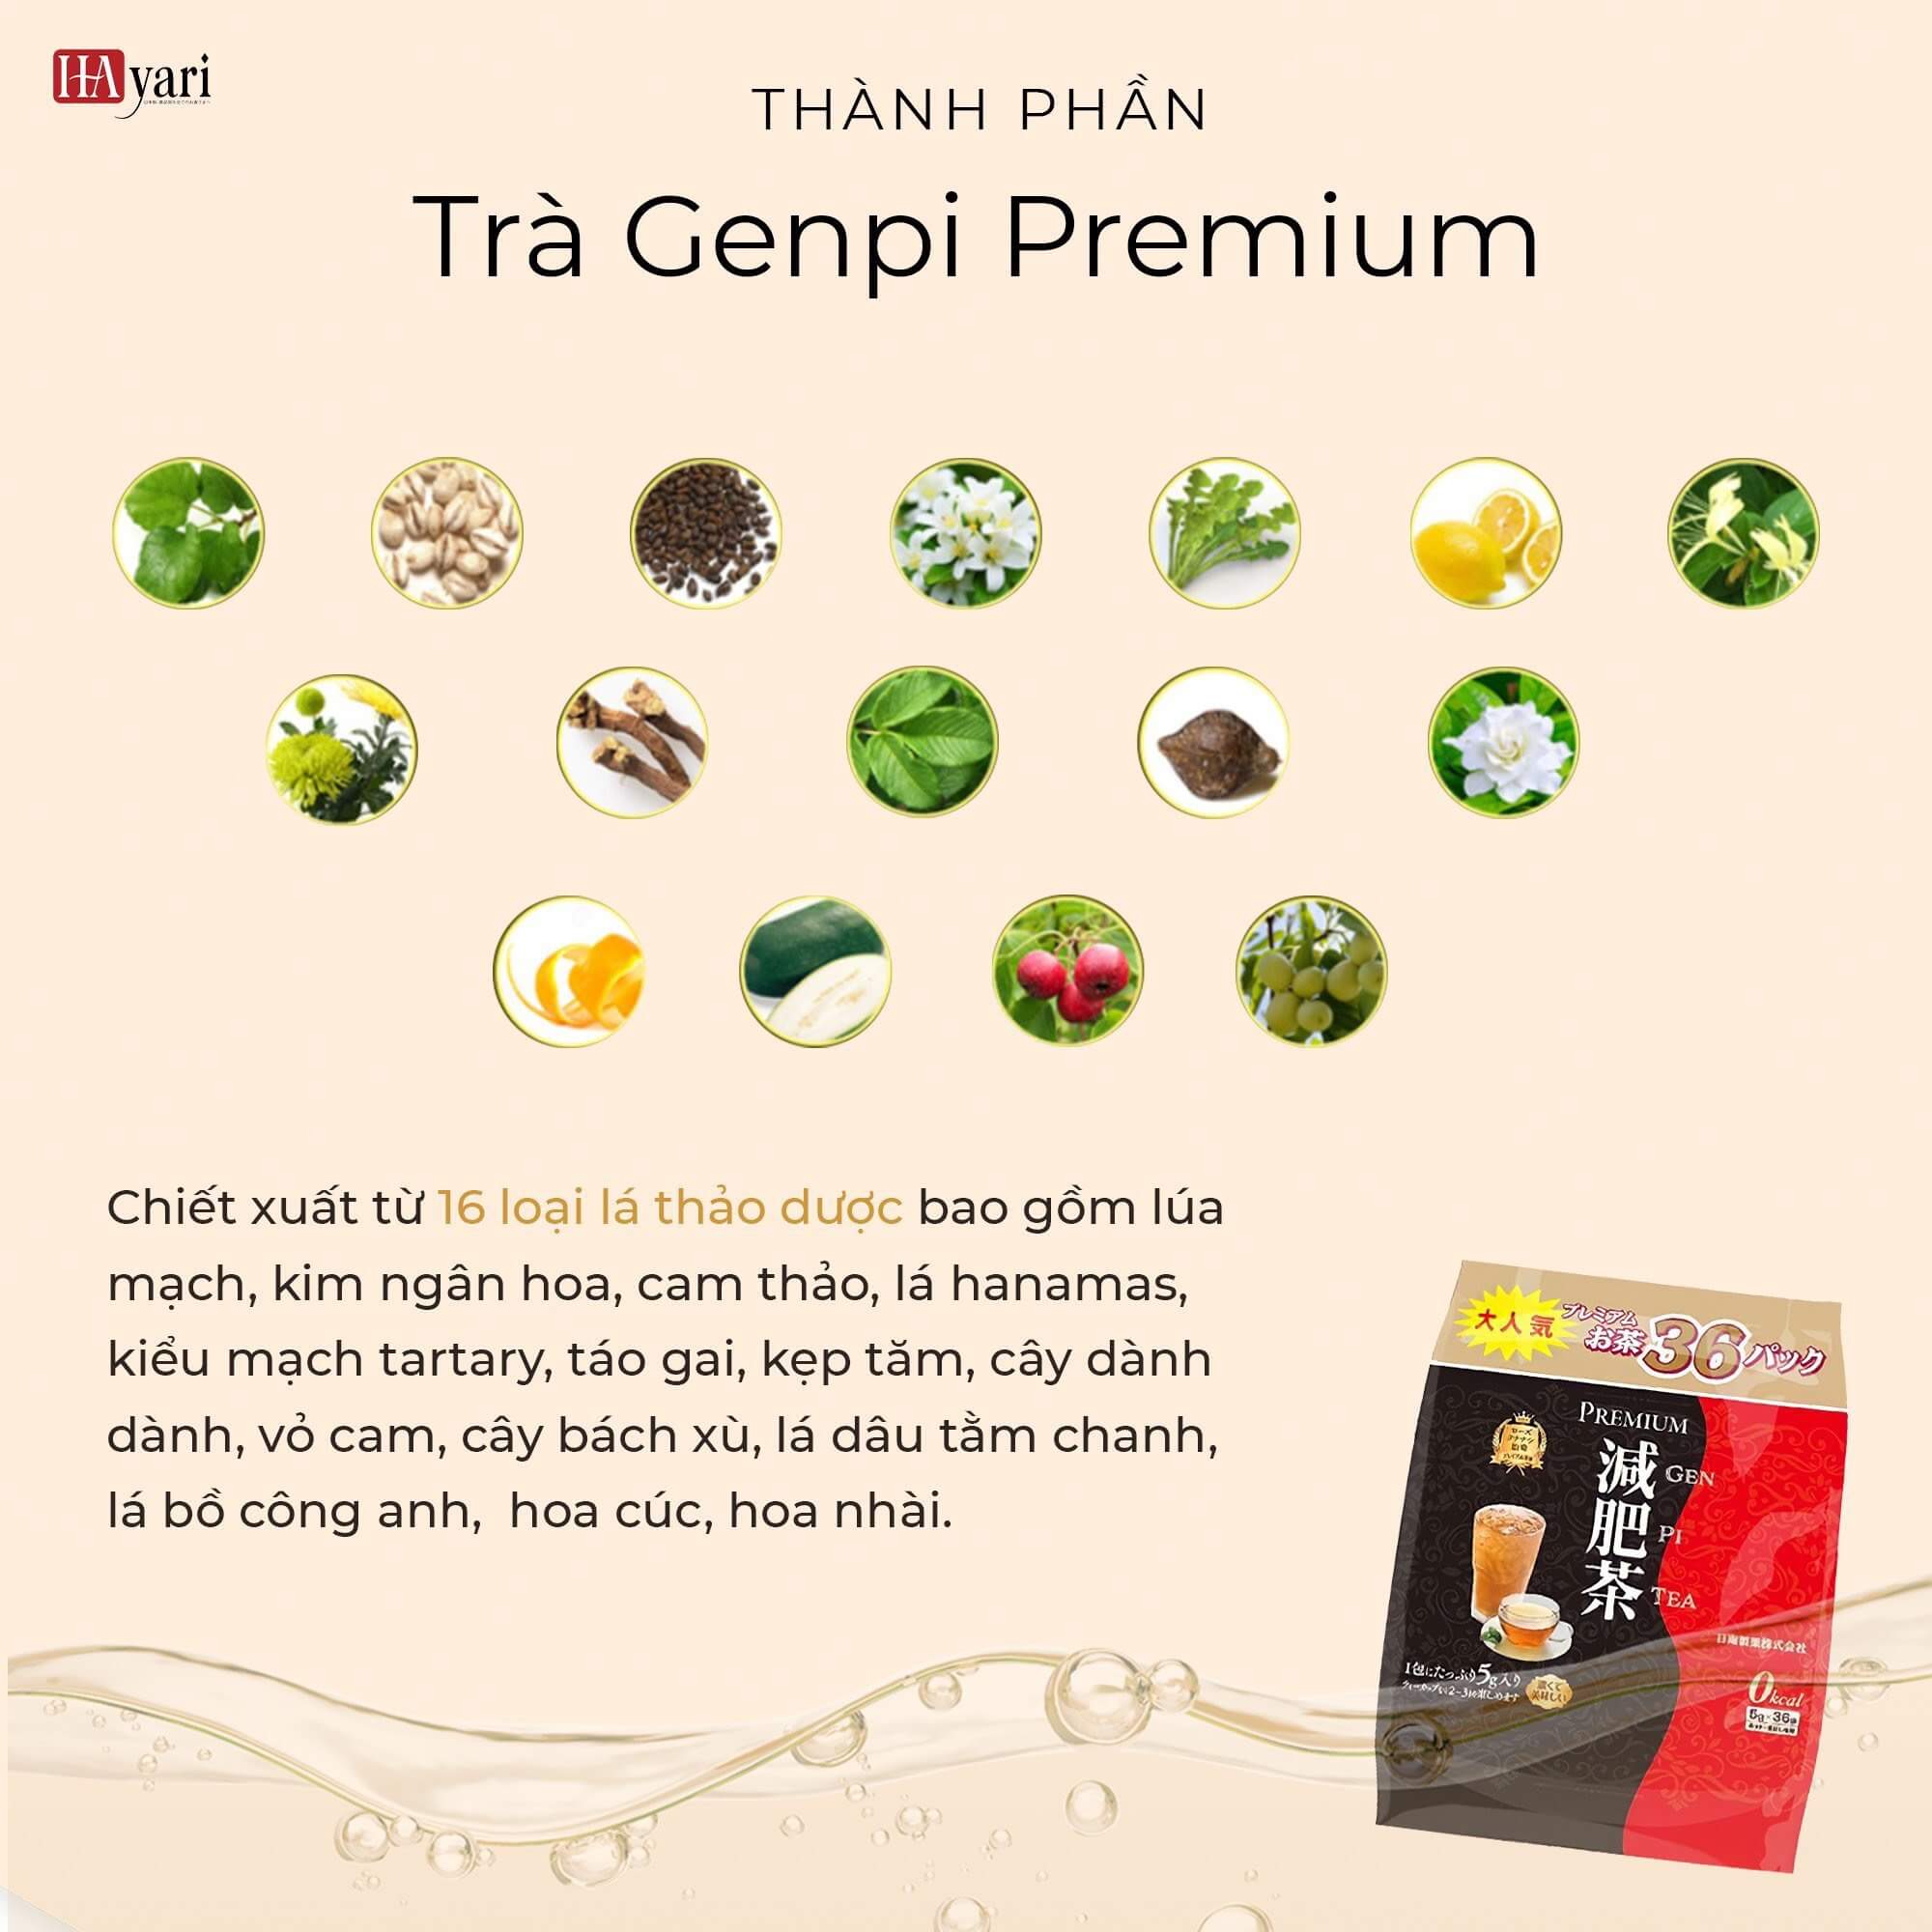 Thành phần trà giảm cân thải độc Premium Genpi Hayari thaoduockhoe.com